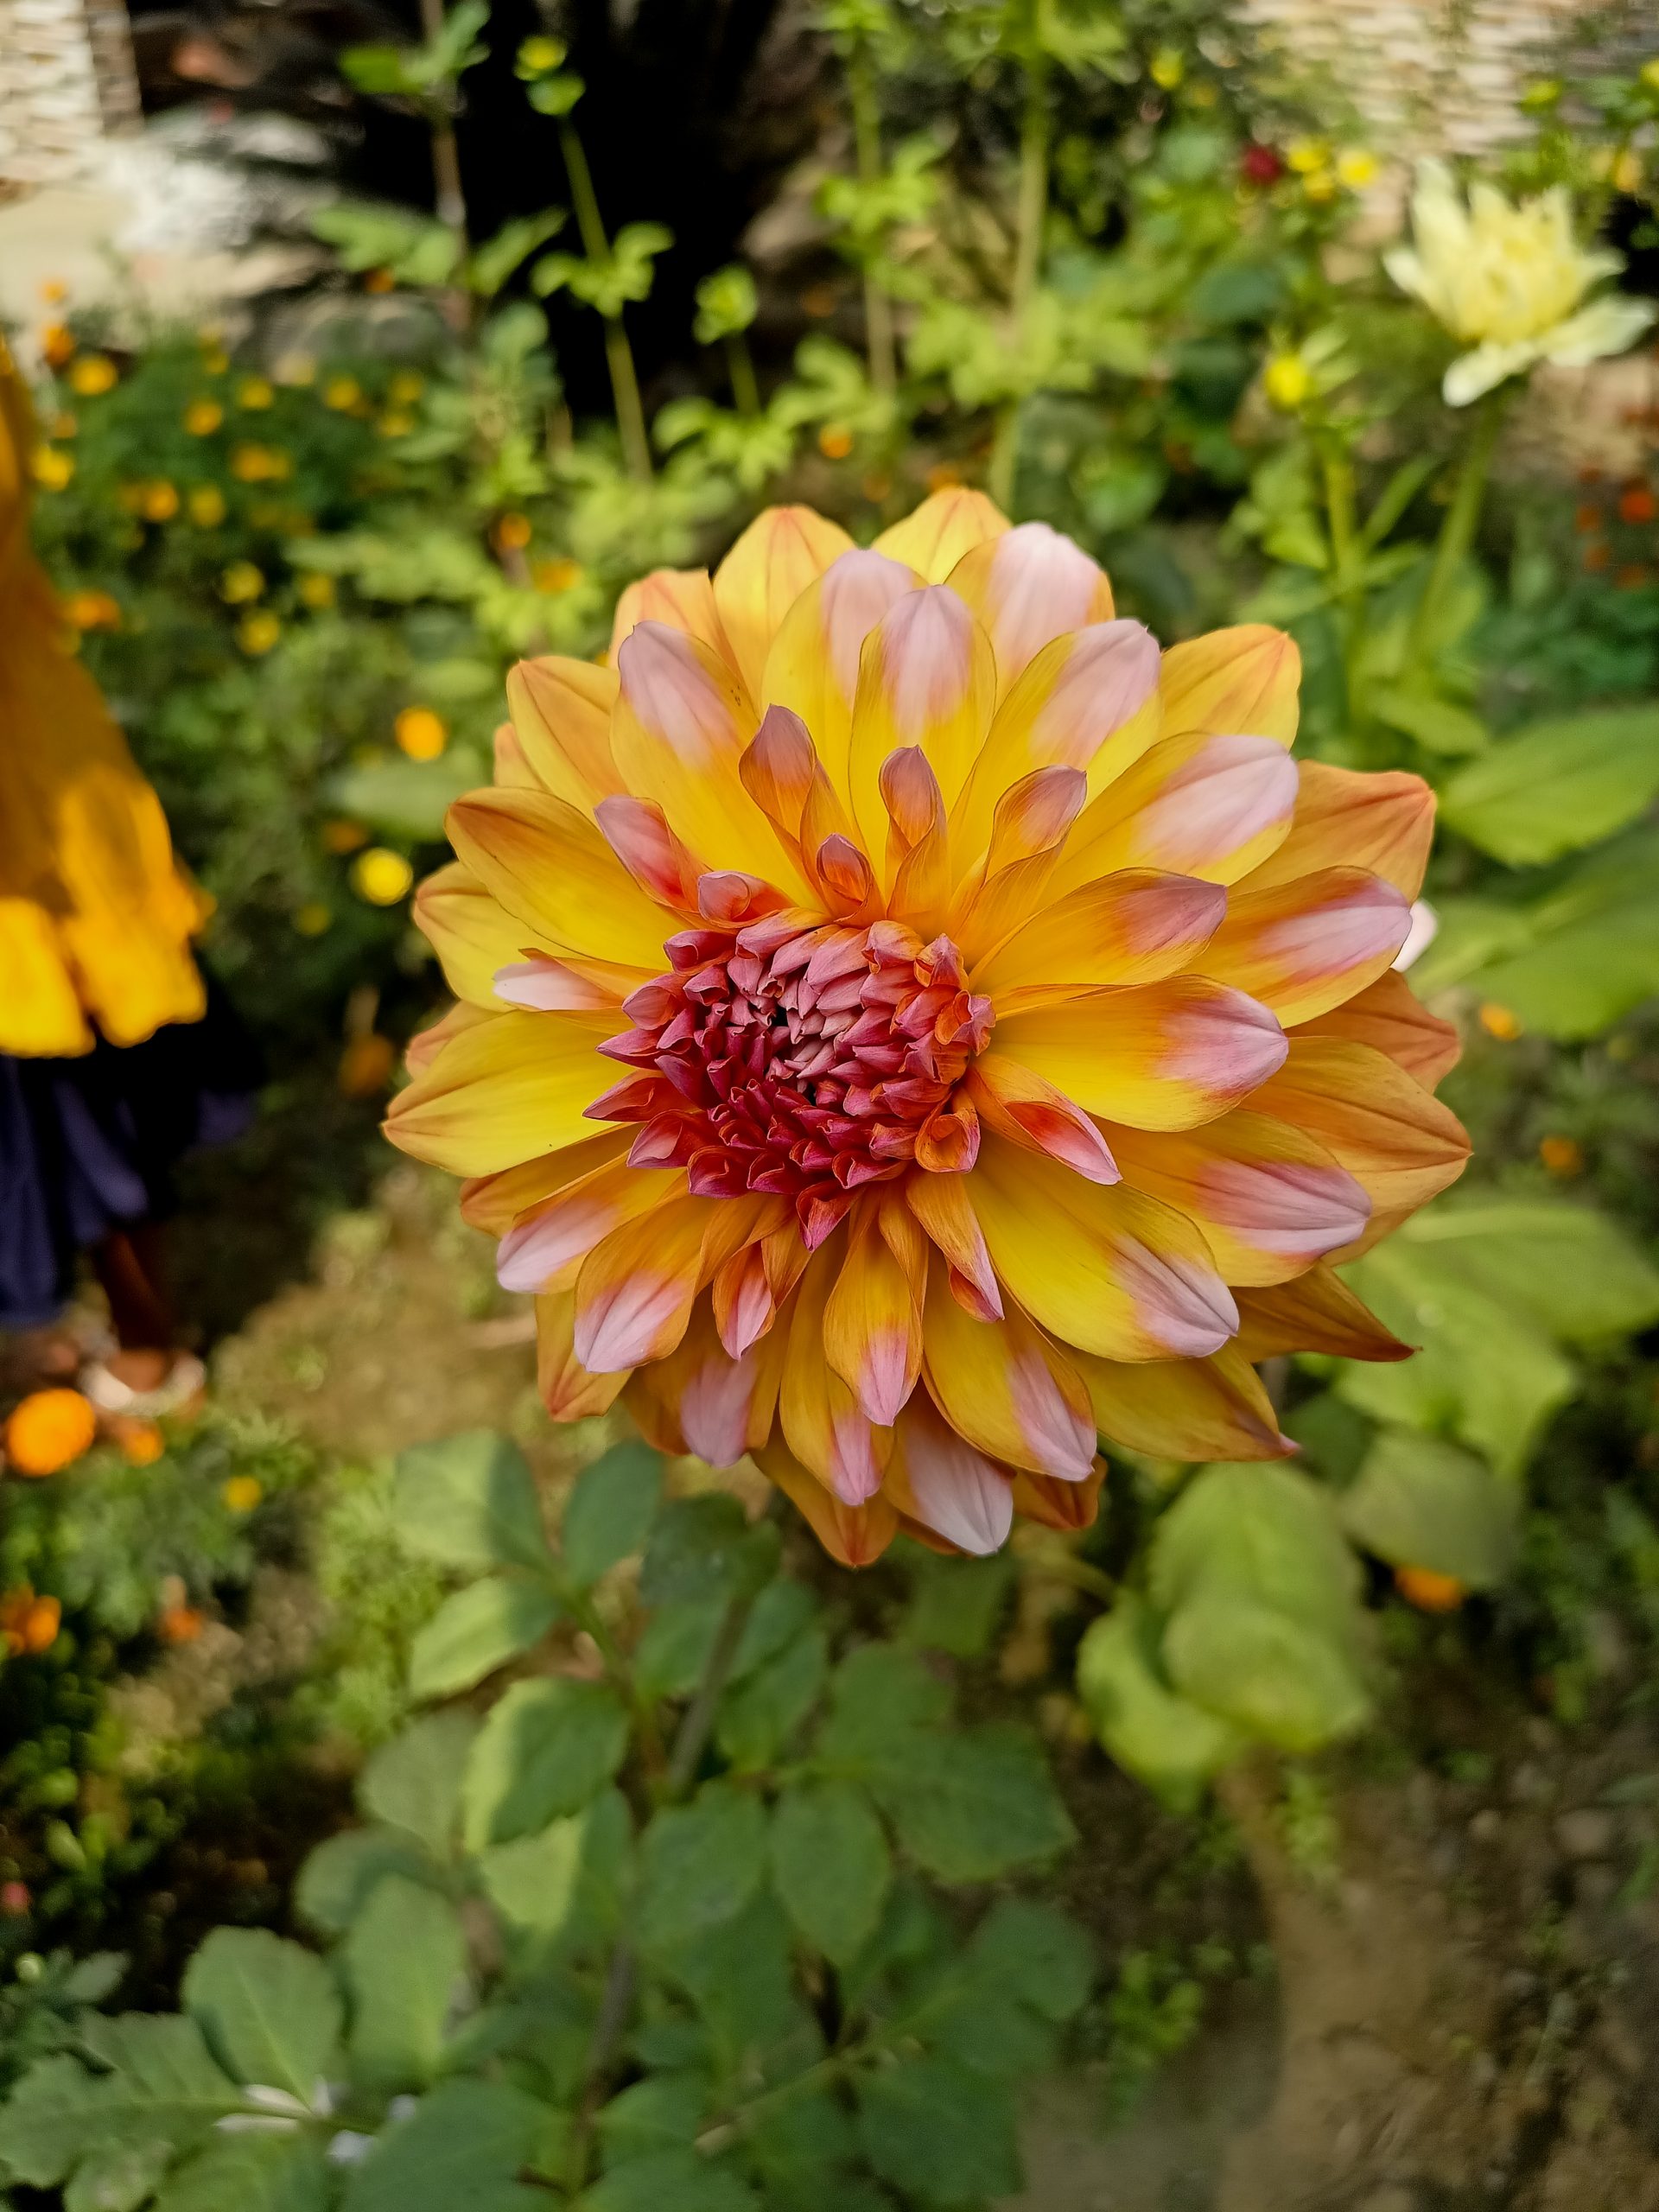 Blooming flower in garden